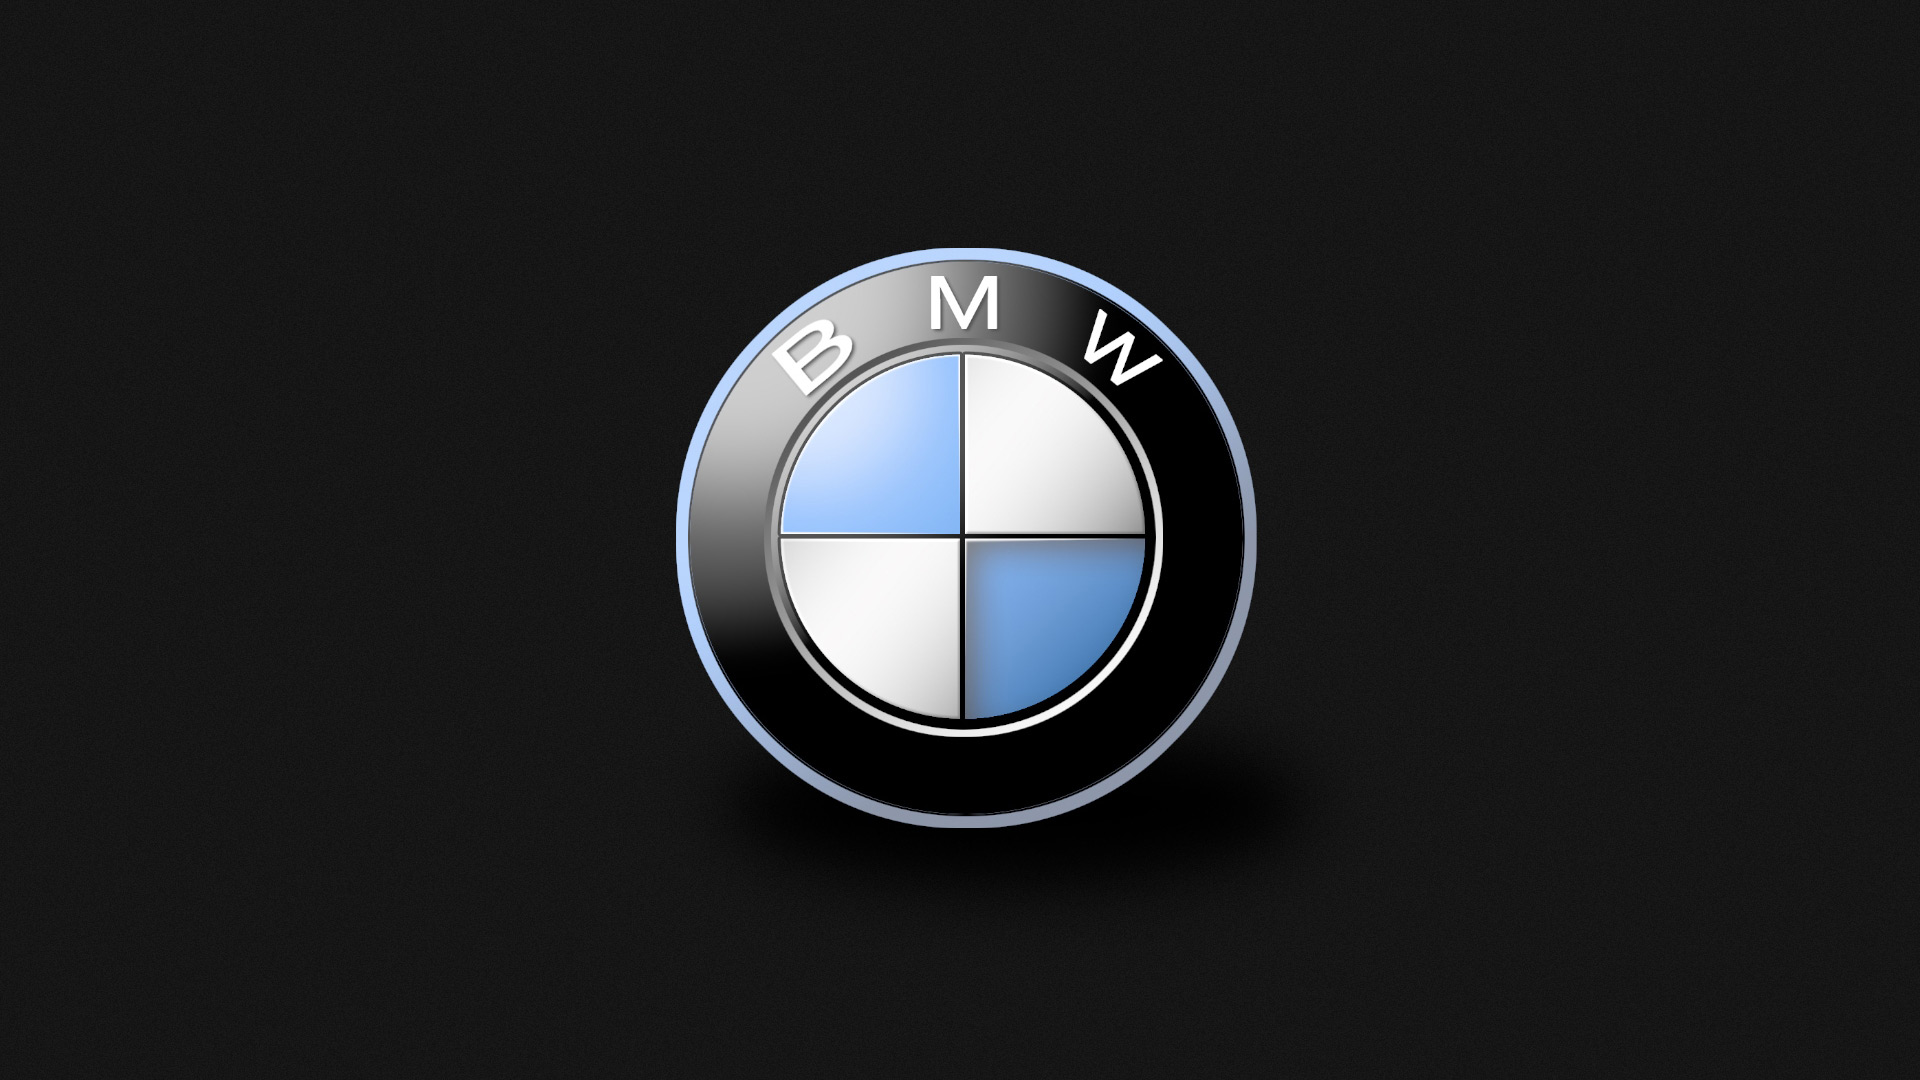 BMW wallpapers, обои для рабочего стола бэха, скачать бесплатно, БМВ, car wallpaper, машины